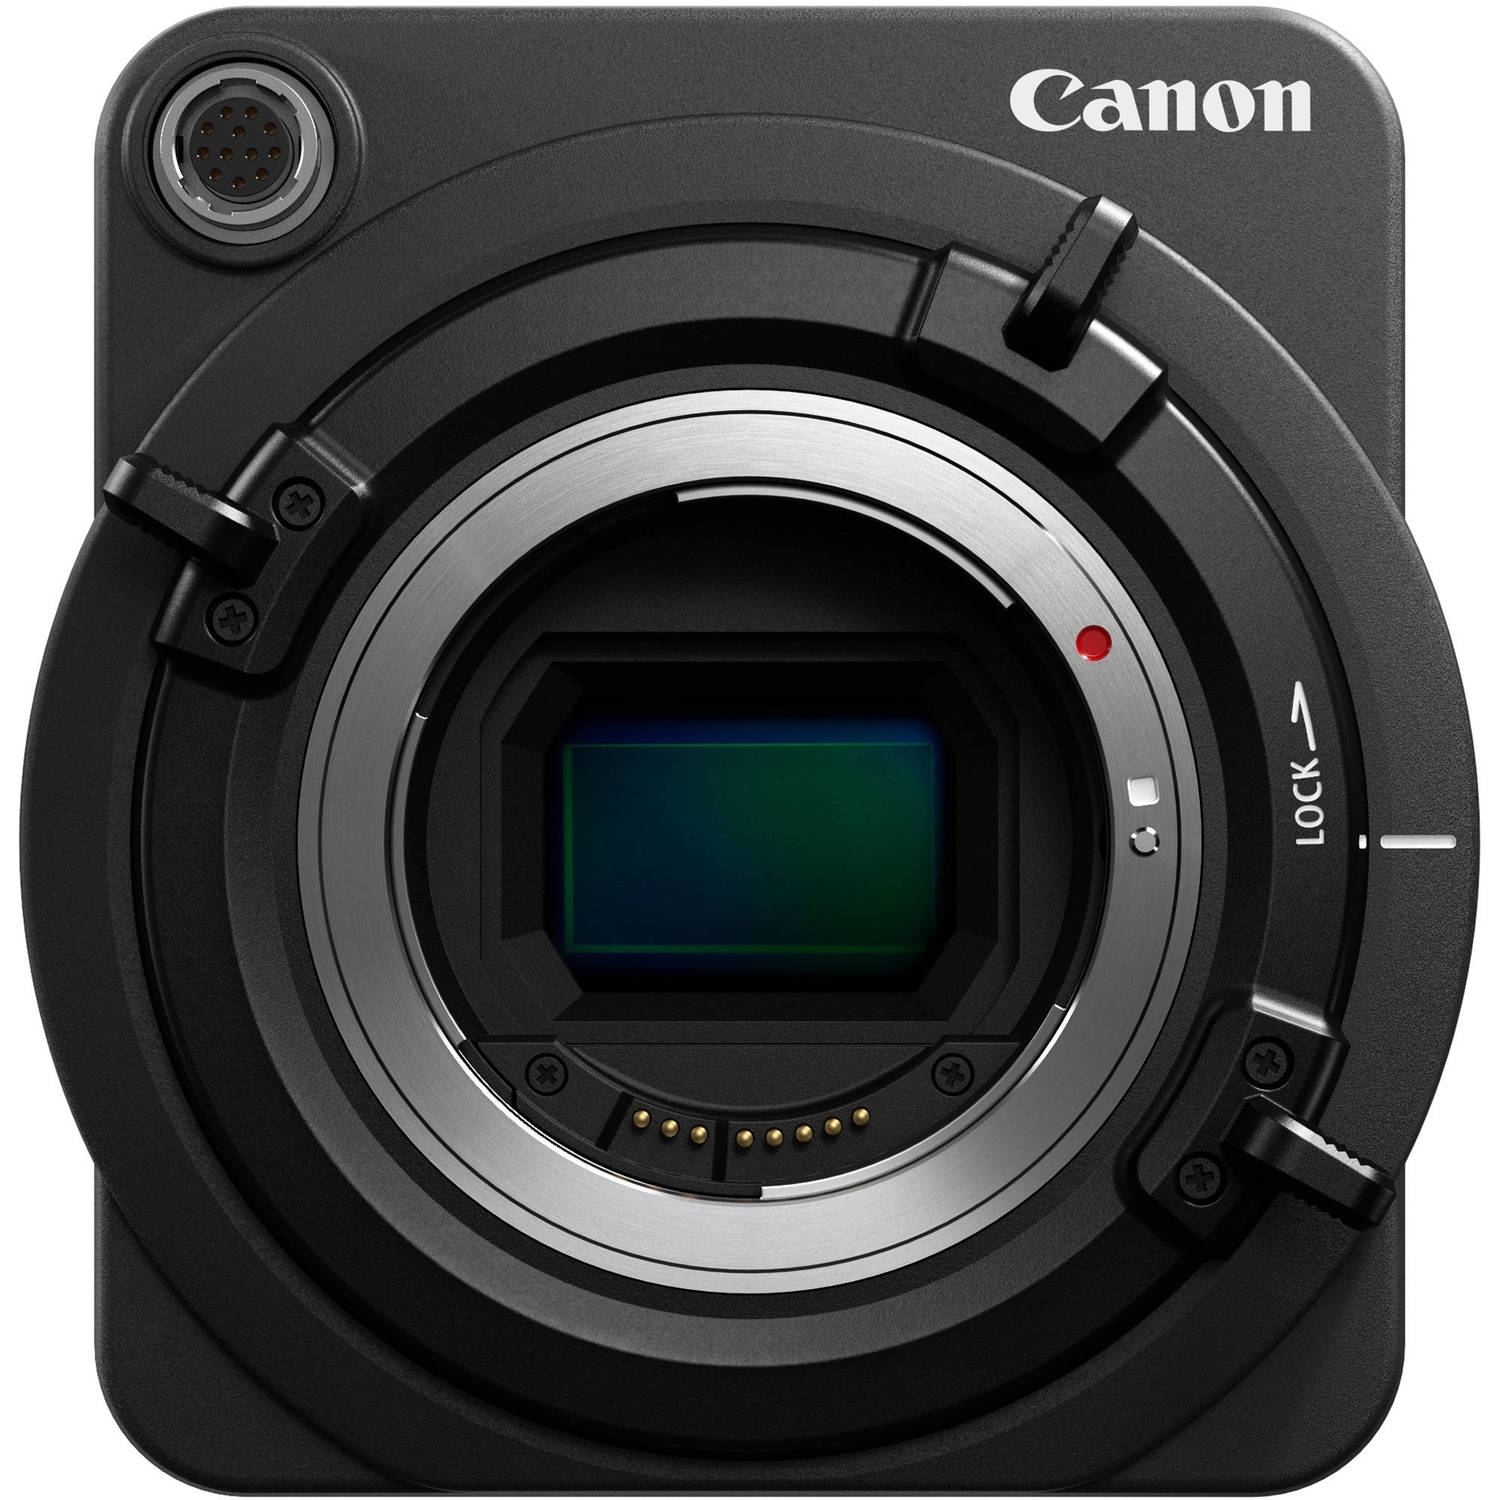 Canon ME200S-SH Body Professioneller Camcorder